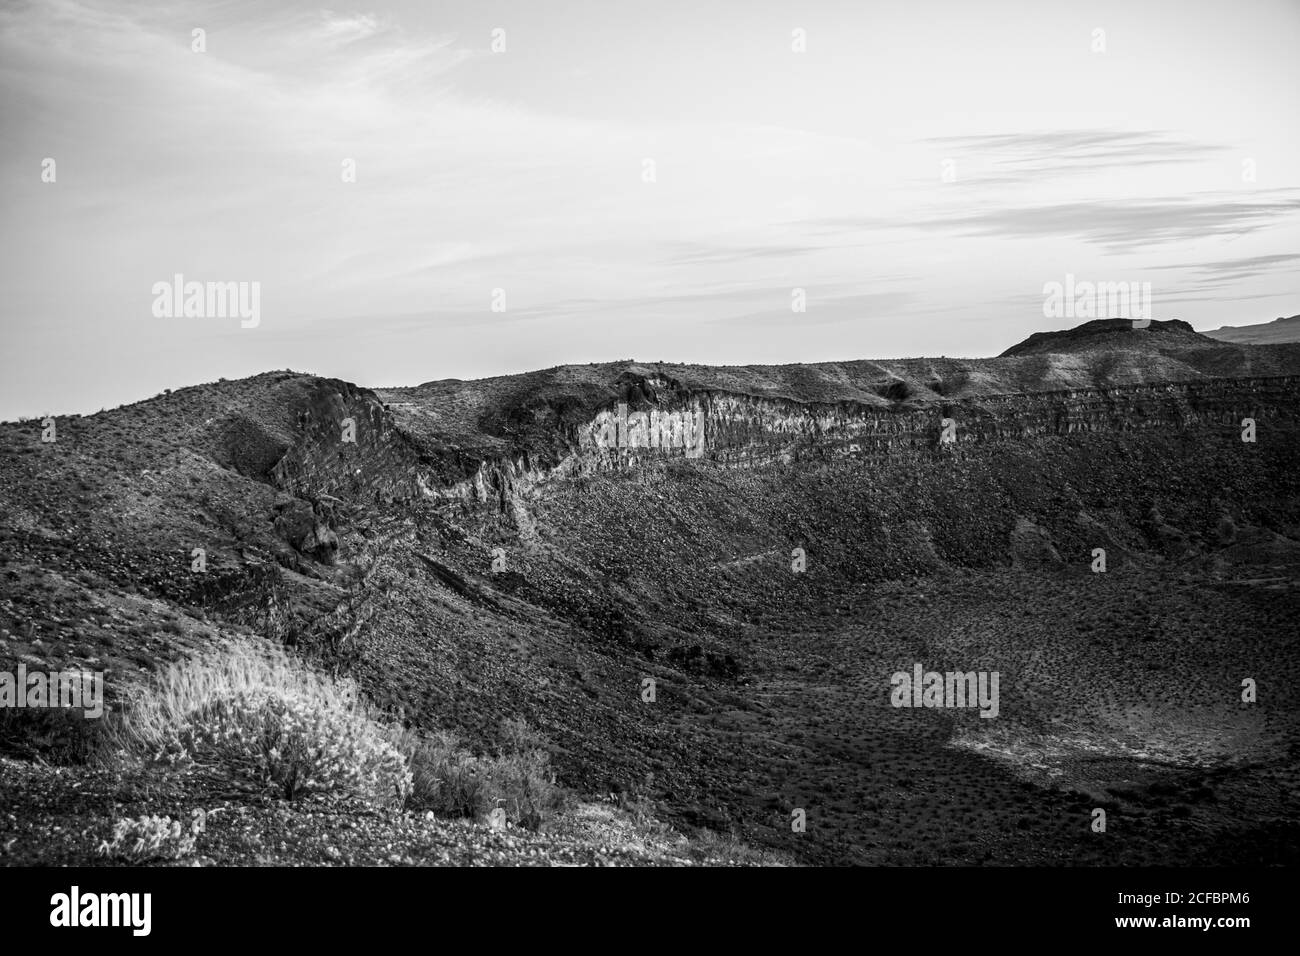 Krater vom Typ Maar El elegant in den Bergen des Biosphärenreservats El Pinacate und der großen Altarwüste in Sonora, Mexiko. Erbe der Menschheit durch die unesco. Typisches Wüstenökosystem von Arizona, nur wenige Kilometer von der Anlage entfernt. Der Vulkan ist der größte in einer umfangreichen Kette von Vulkankegel und Krater, 250 Meter tief und 1,500 Meter im Durchmesser. Felsiger Boden, Oberfläche, trocken, trocken, Dürre .. (Foto von Luis Gutierrez / Norte Photo) cráter tipo maar El elegante en la sierra de la Reserva de la Biosfera El Pinacate y gran desierto de Altar en Sonora, Mexiko. Patrimonio de la Humanidad por la UNE Stockfoto